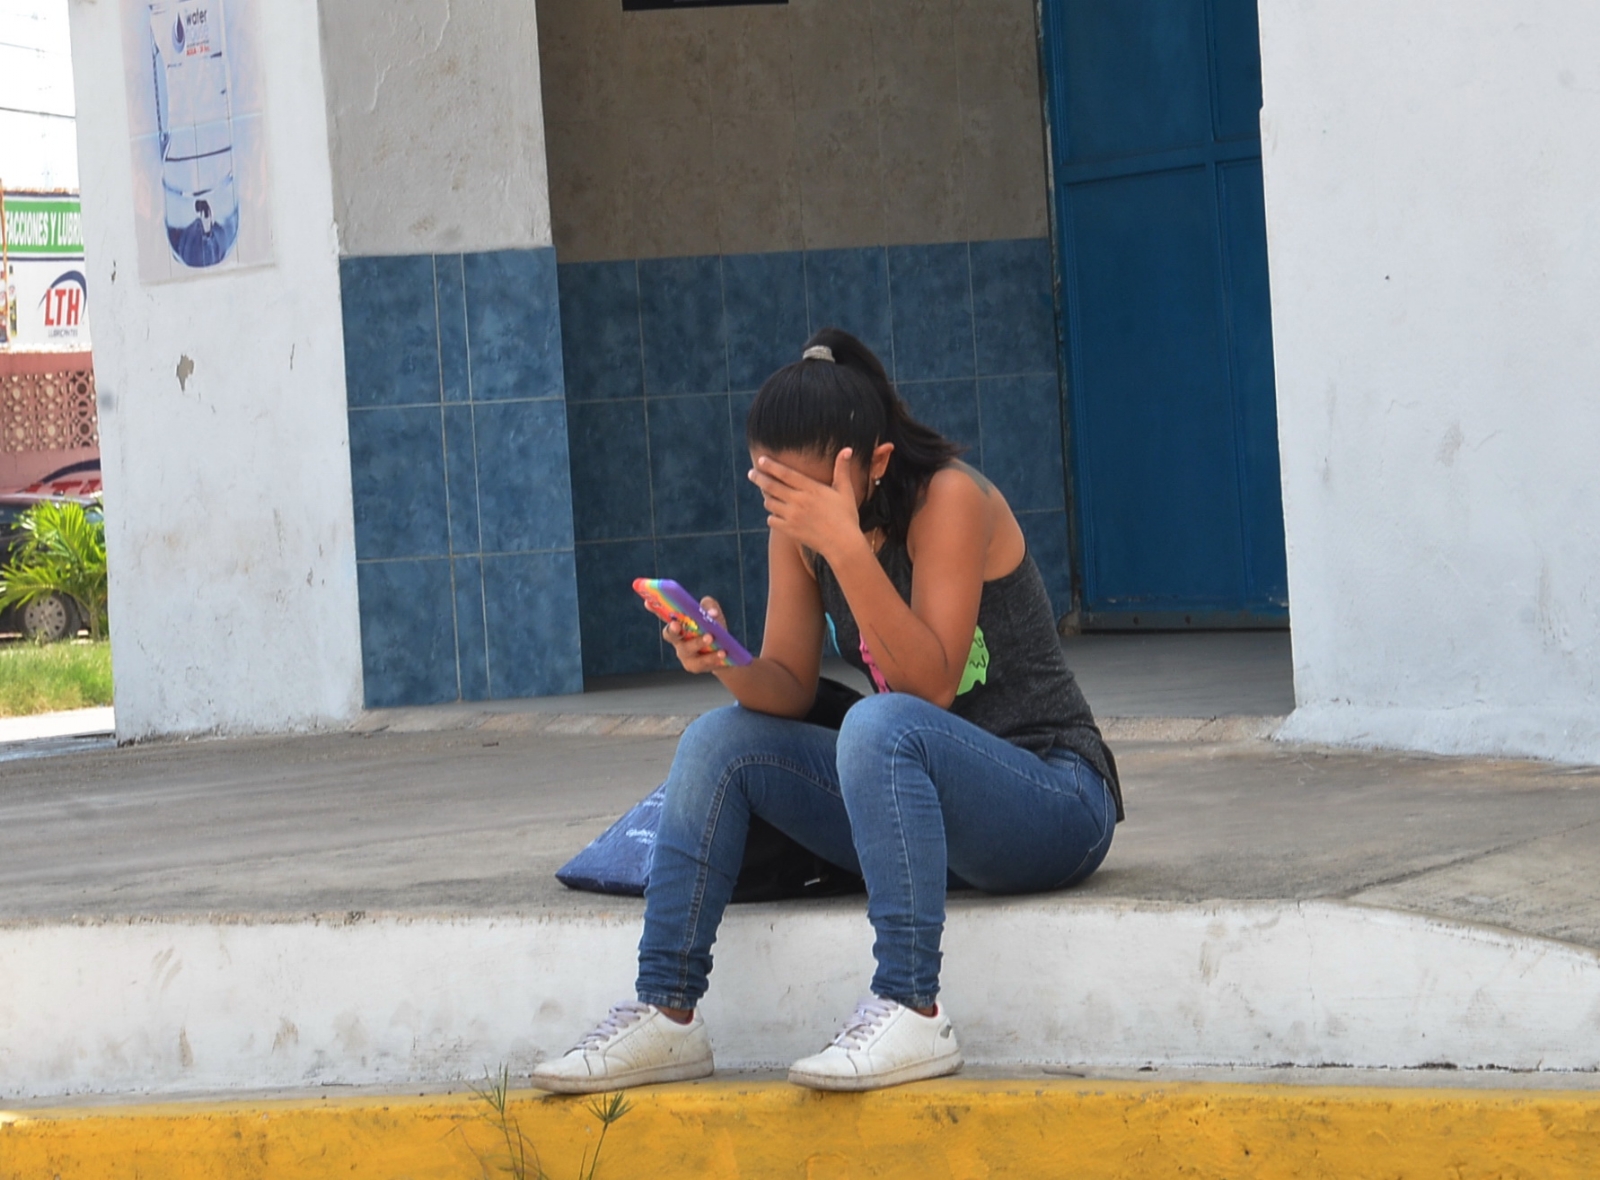 Yucatán ocupa el tercer lugar de ciberacoso en la Península